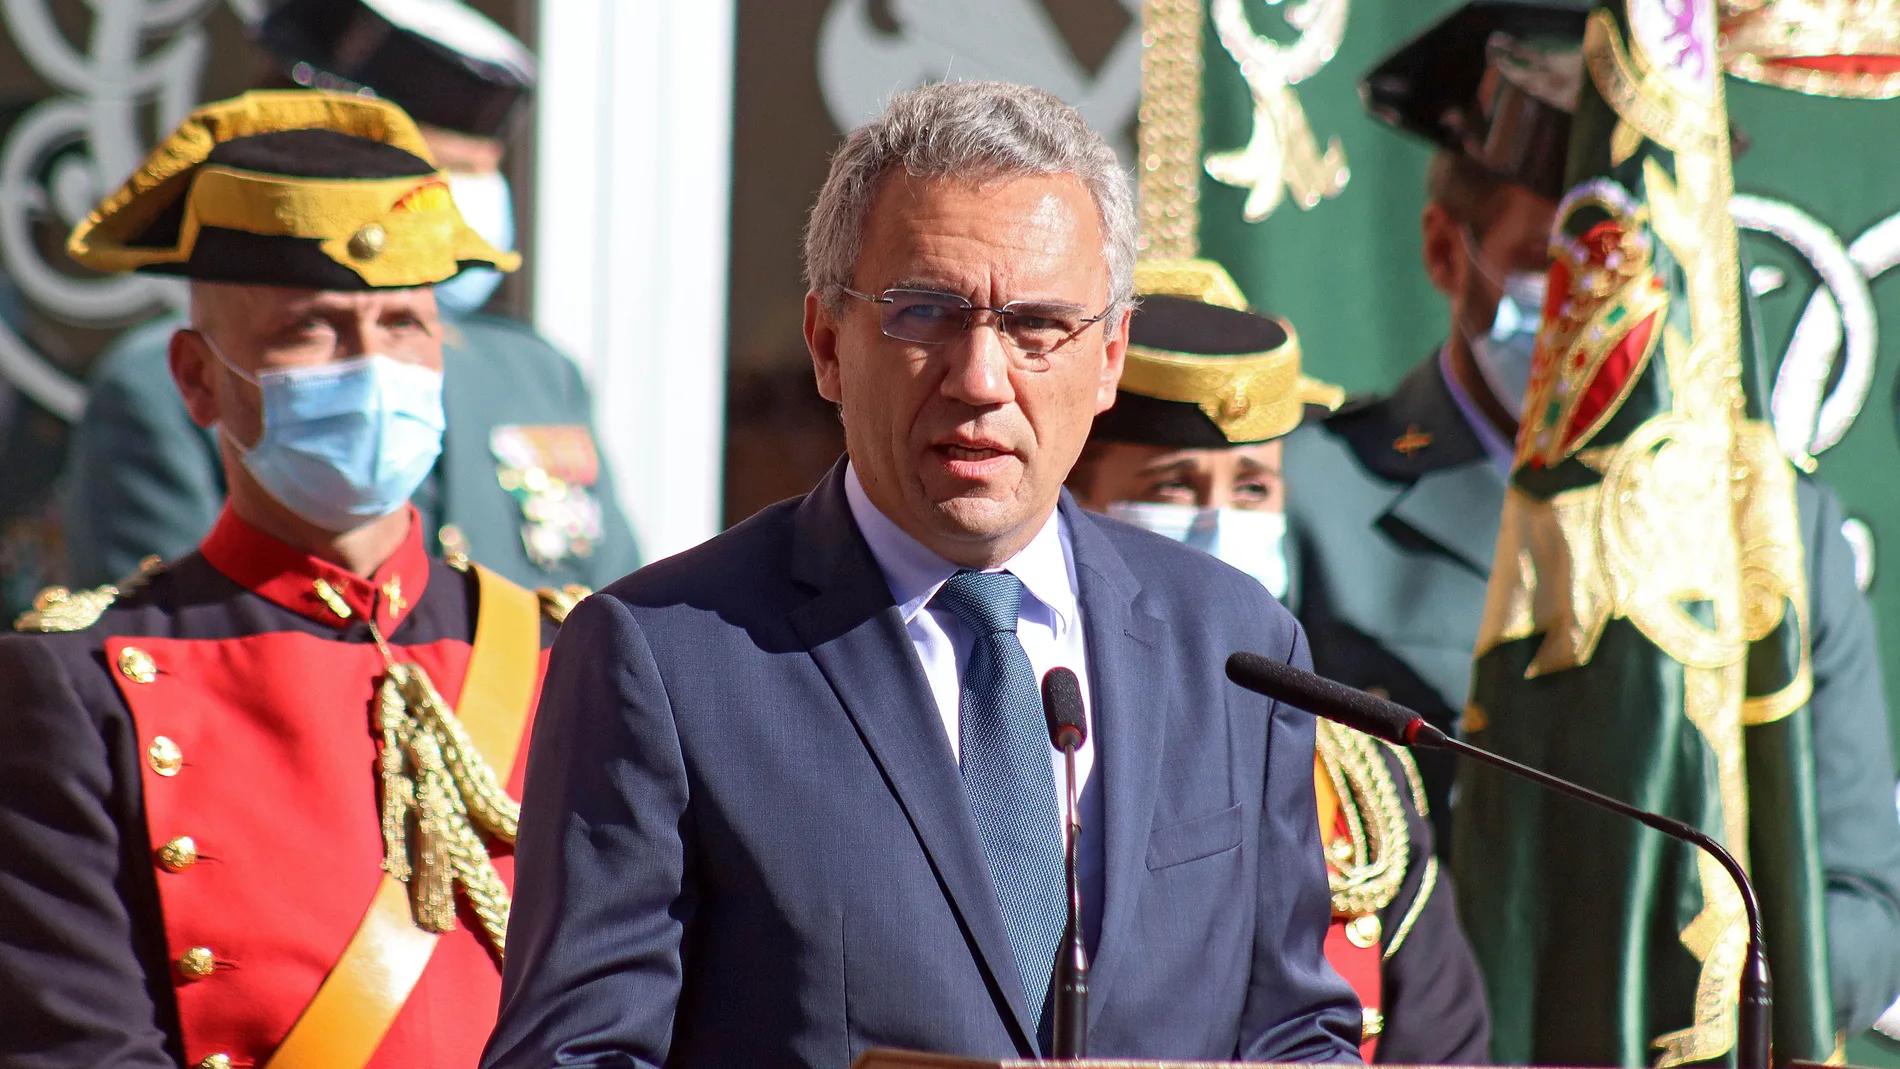 El delegado del Gobierno en Castilla y León, Javier Izquierdo, interviene en los actos de León por el Día de El Pilar, patrona de la Guardia Civil